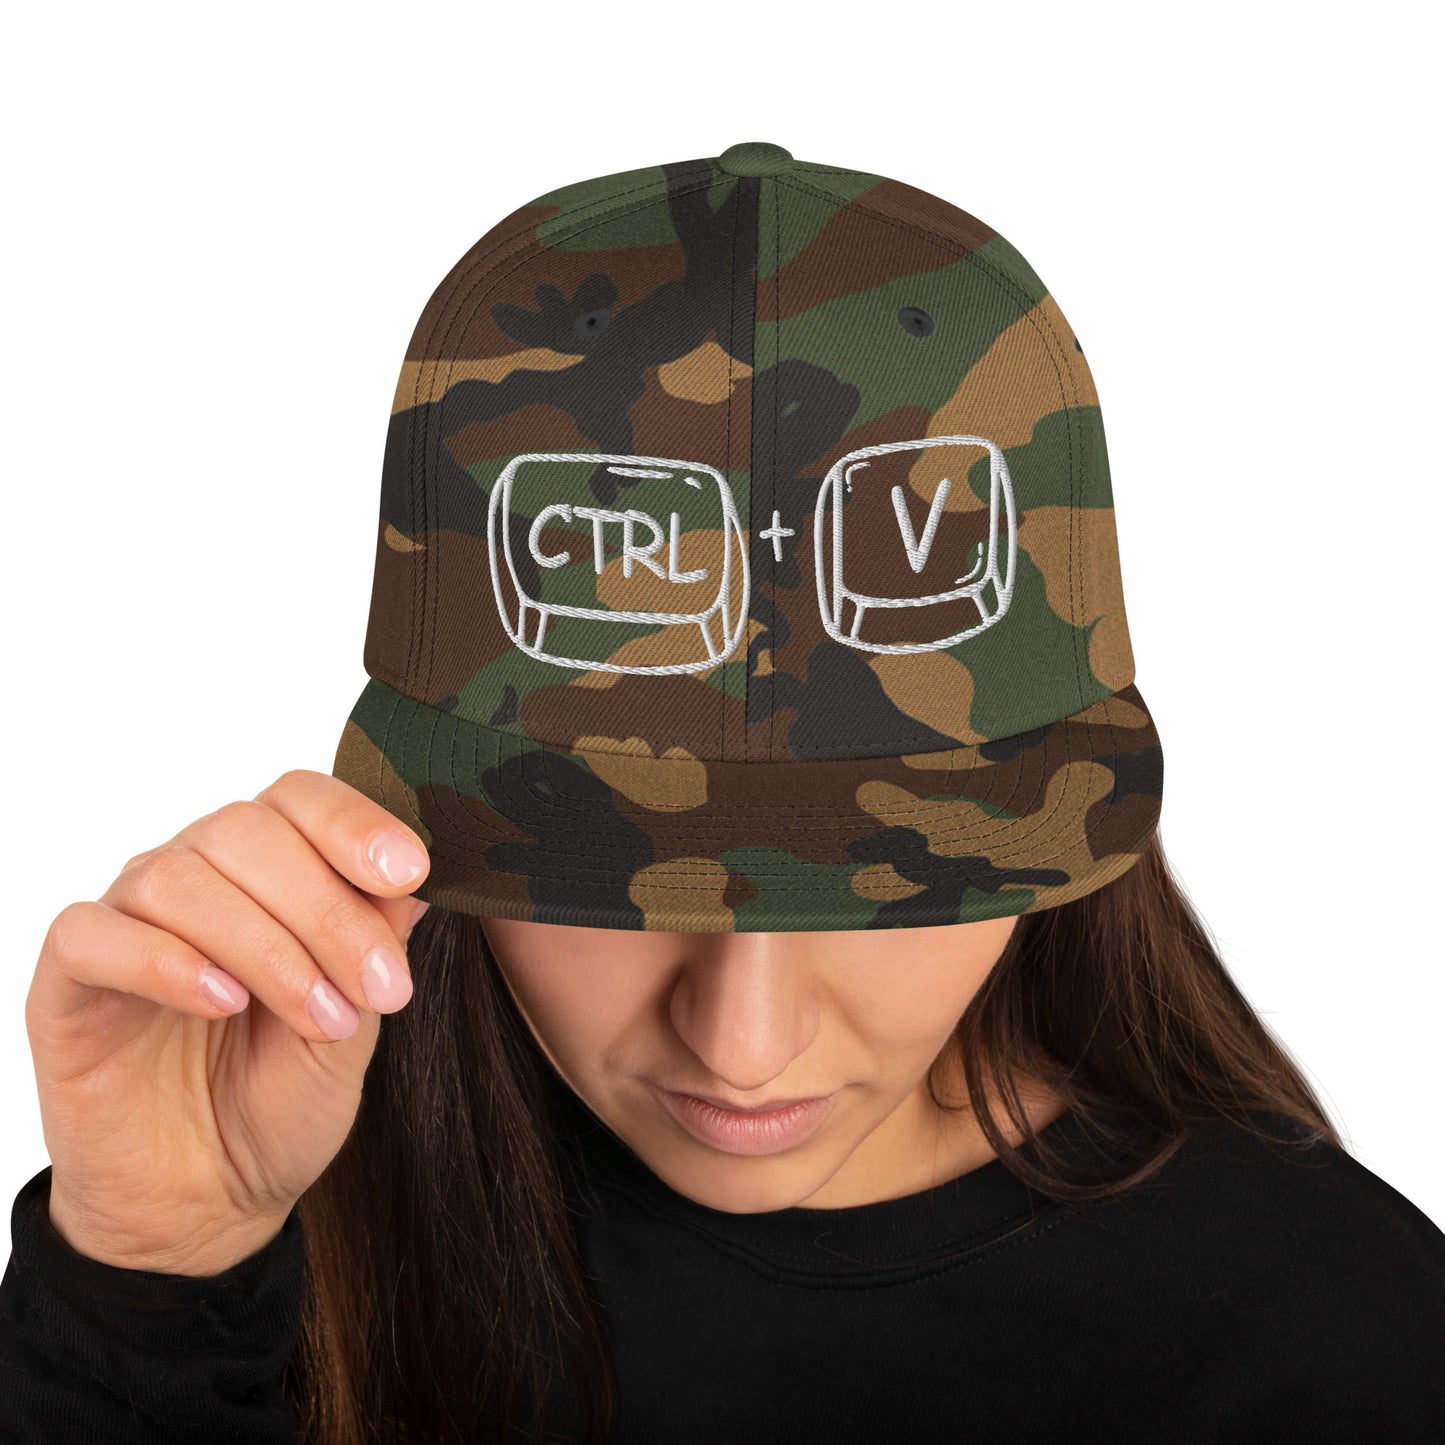 'CTRL + V' Snapback Hat